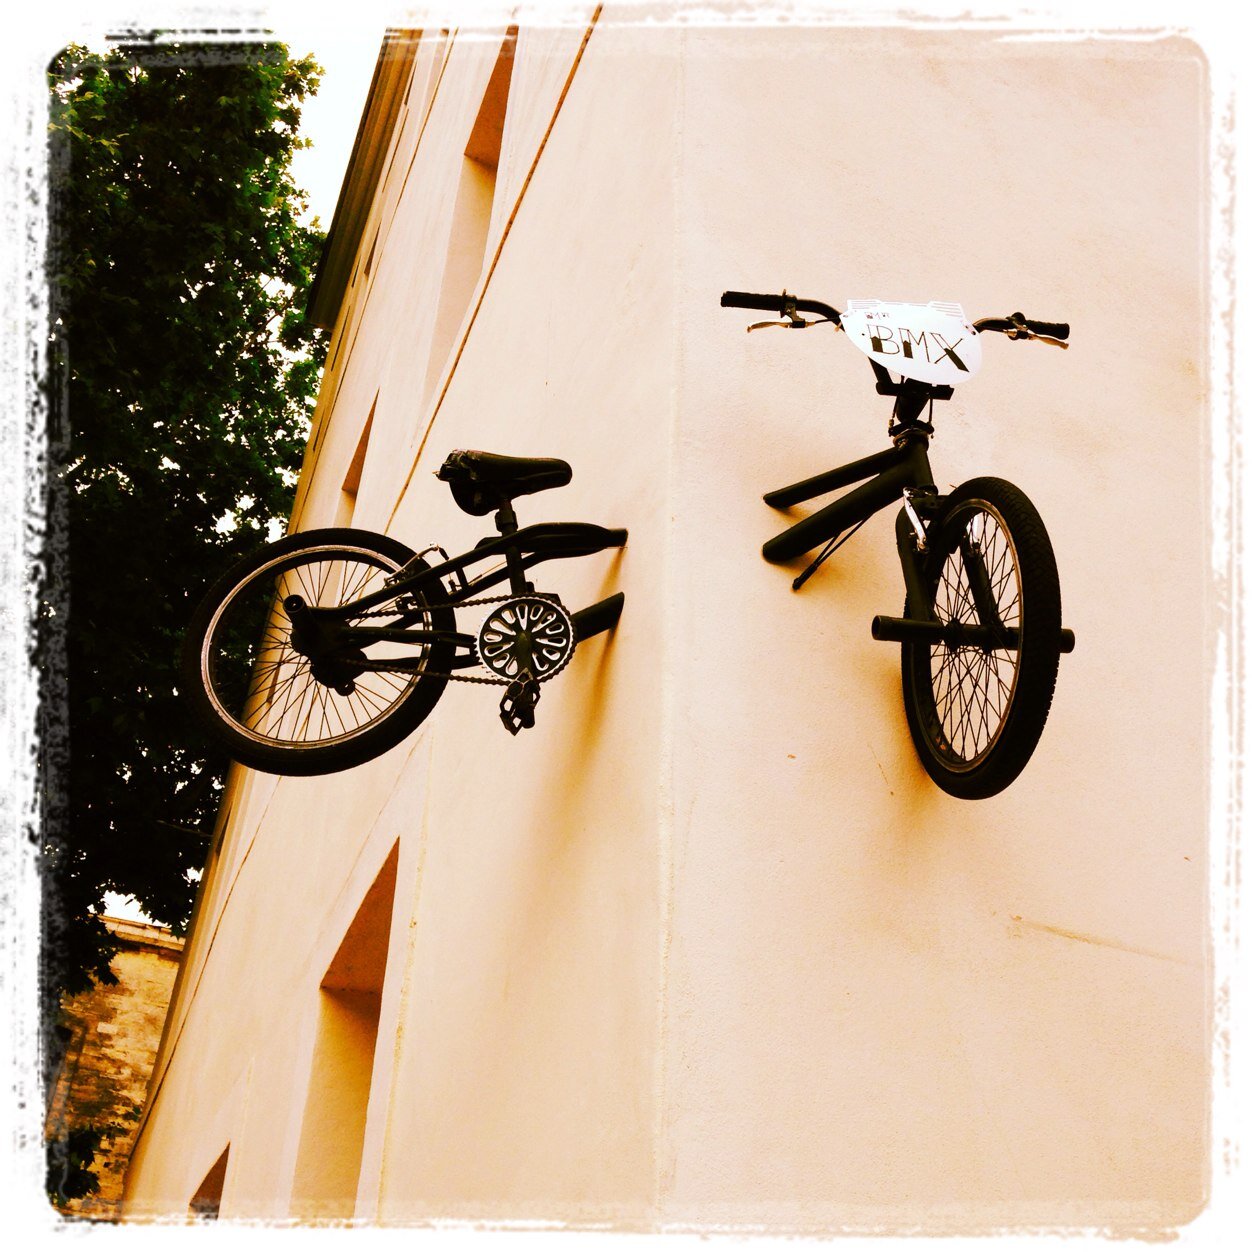 👨🏻‍🎨 artiste français qui accroche des vélos sur les murs des rues du monde 🌎 en toute illégalité! légitimité pardon